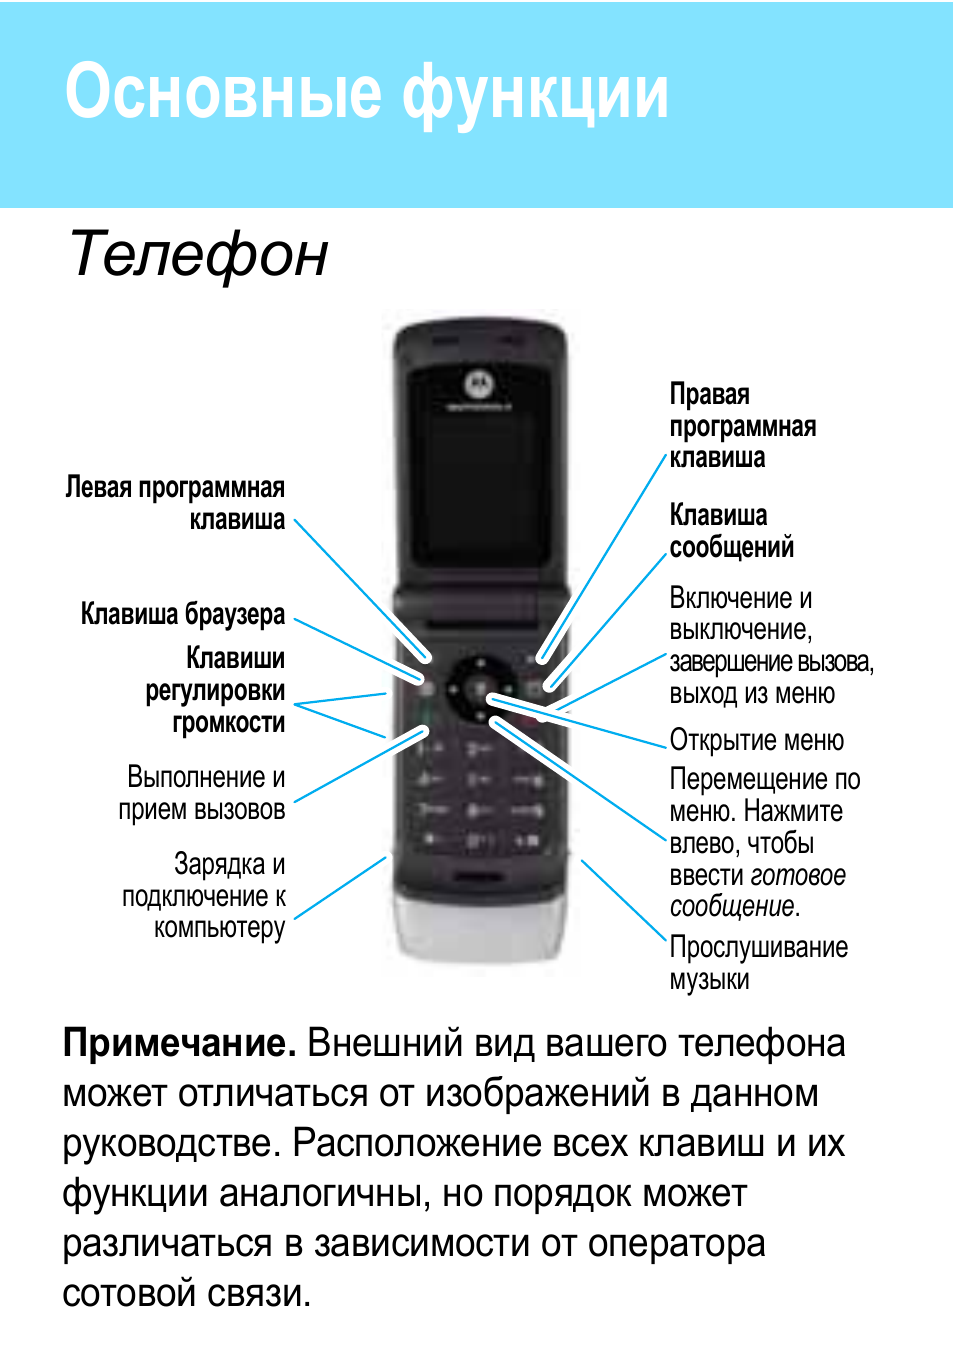 Как называется функция в телефоне. Motorola w377. Основные функции телефона. Возможности телефона. Функционал телефона.